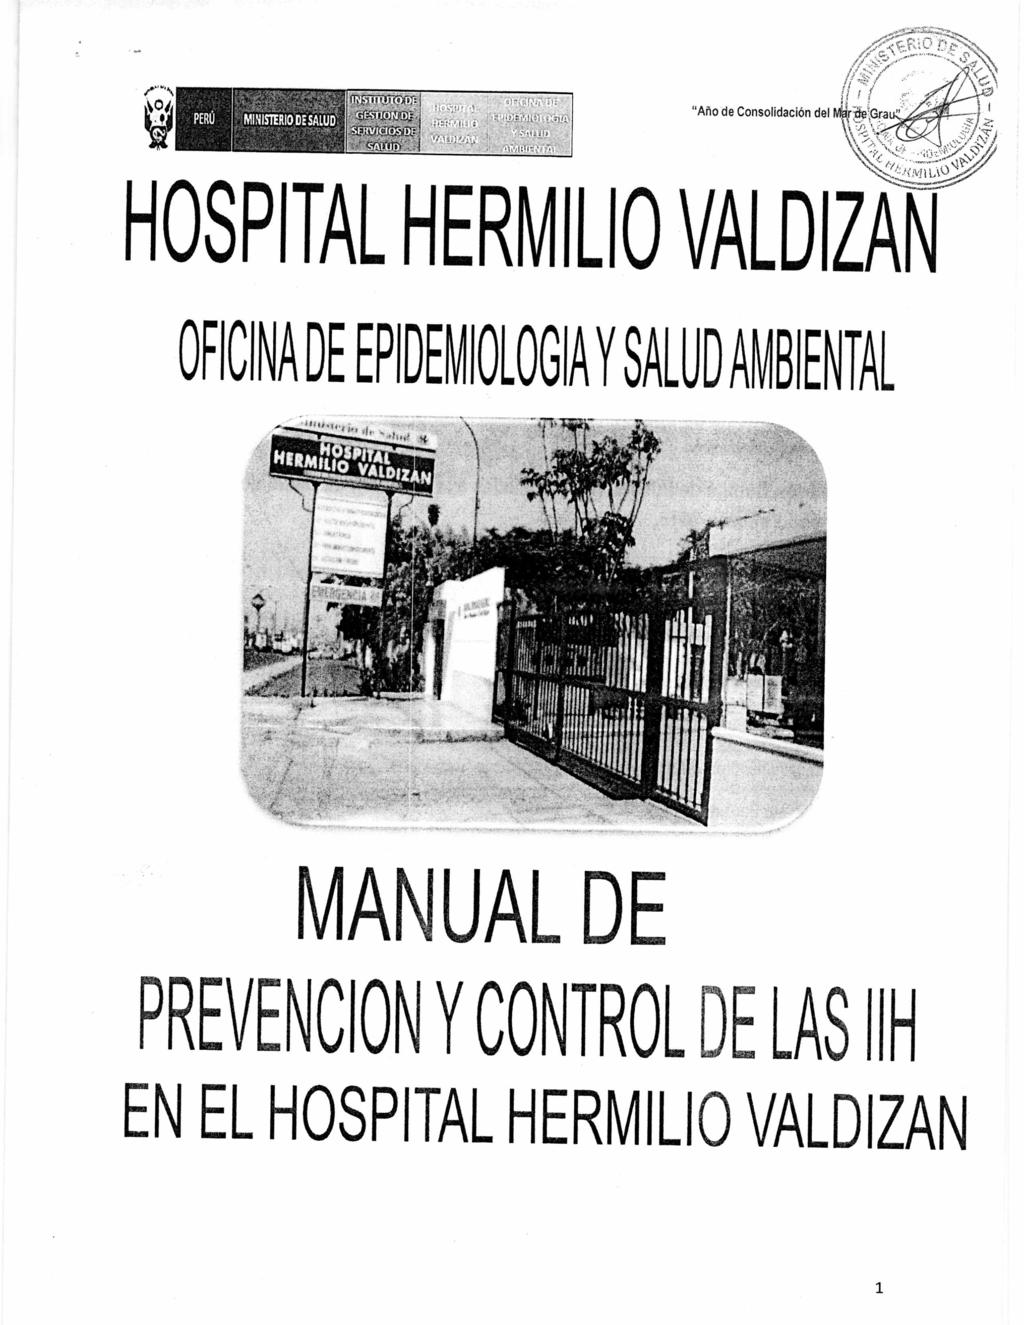 9 PERU "Año de Consolidación del HOSPITAL HERVILIO VALDIZAN OFICINA DE EPIDEMIOlOGIA Y